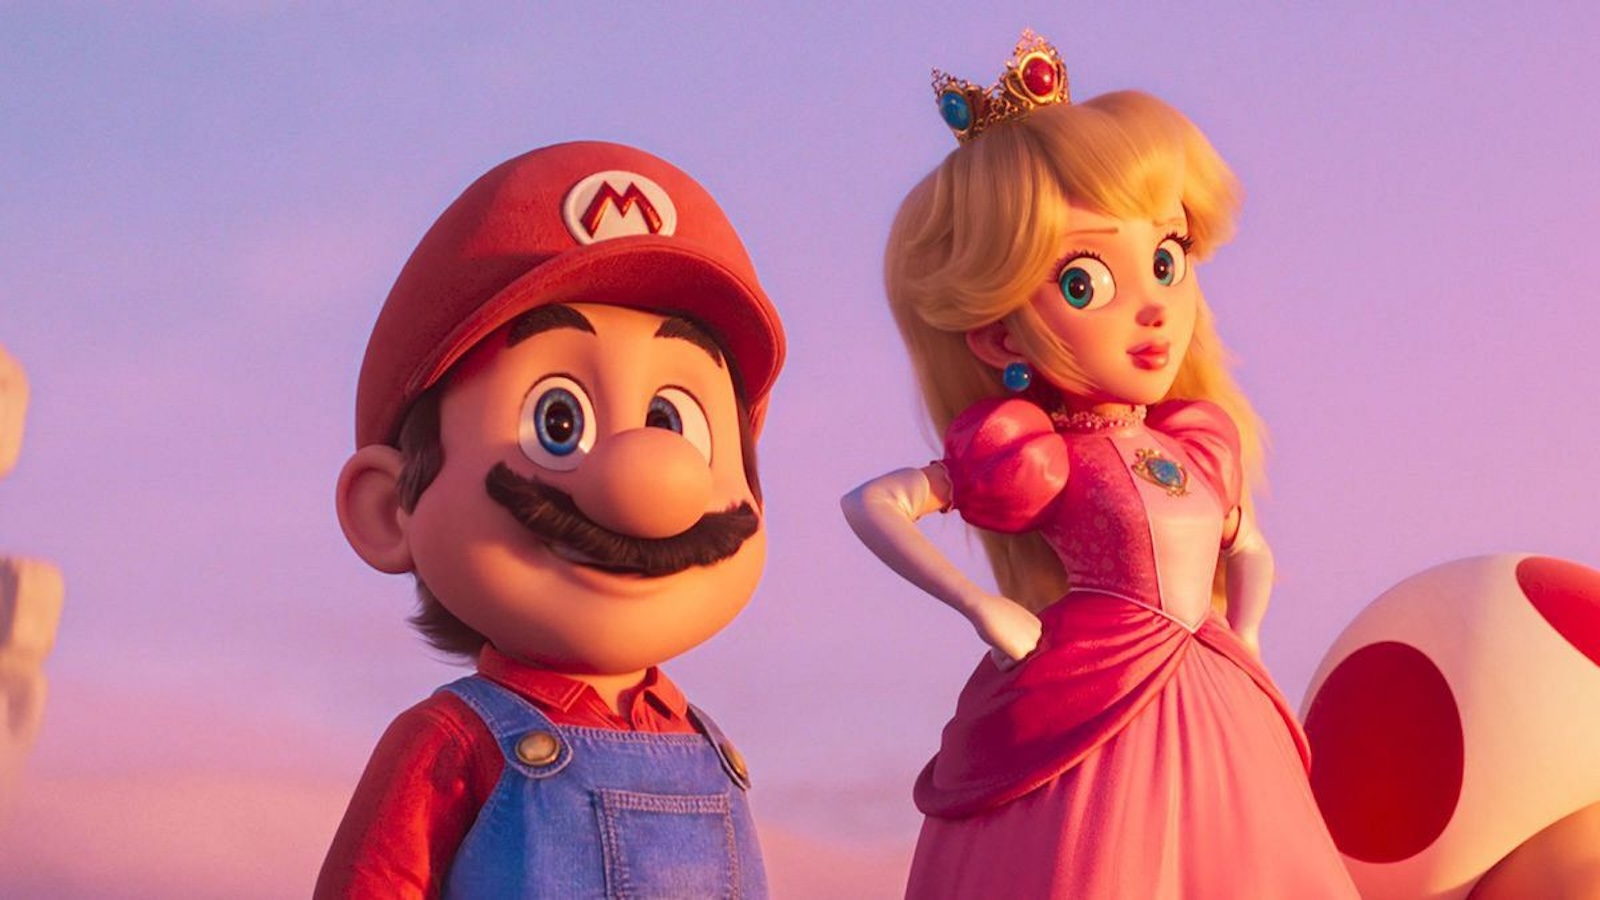 Super Mario Bros. 2 sarà un prequel senza Mario? [RUMOR]